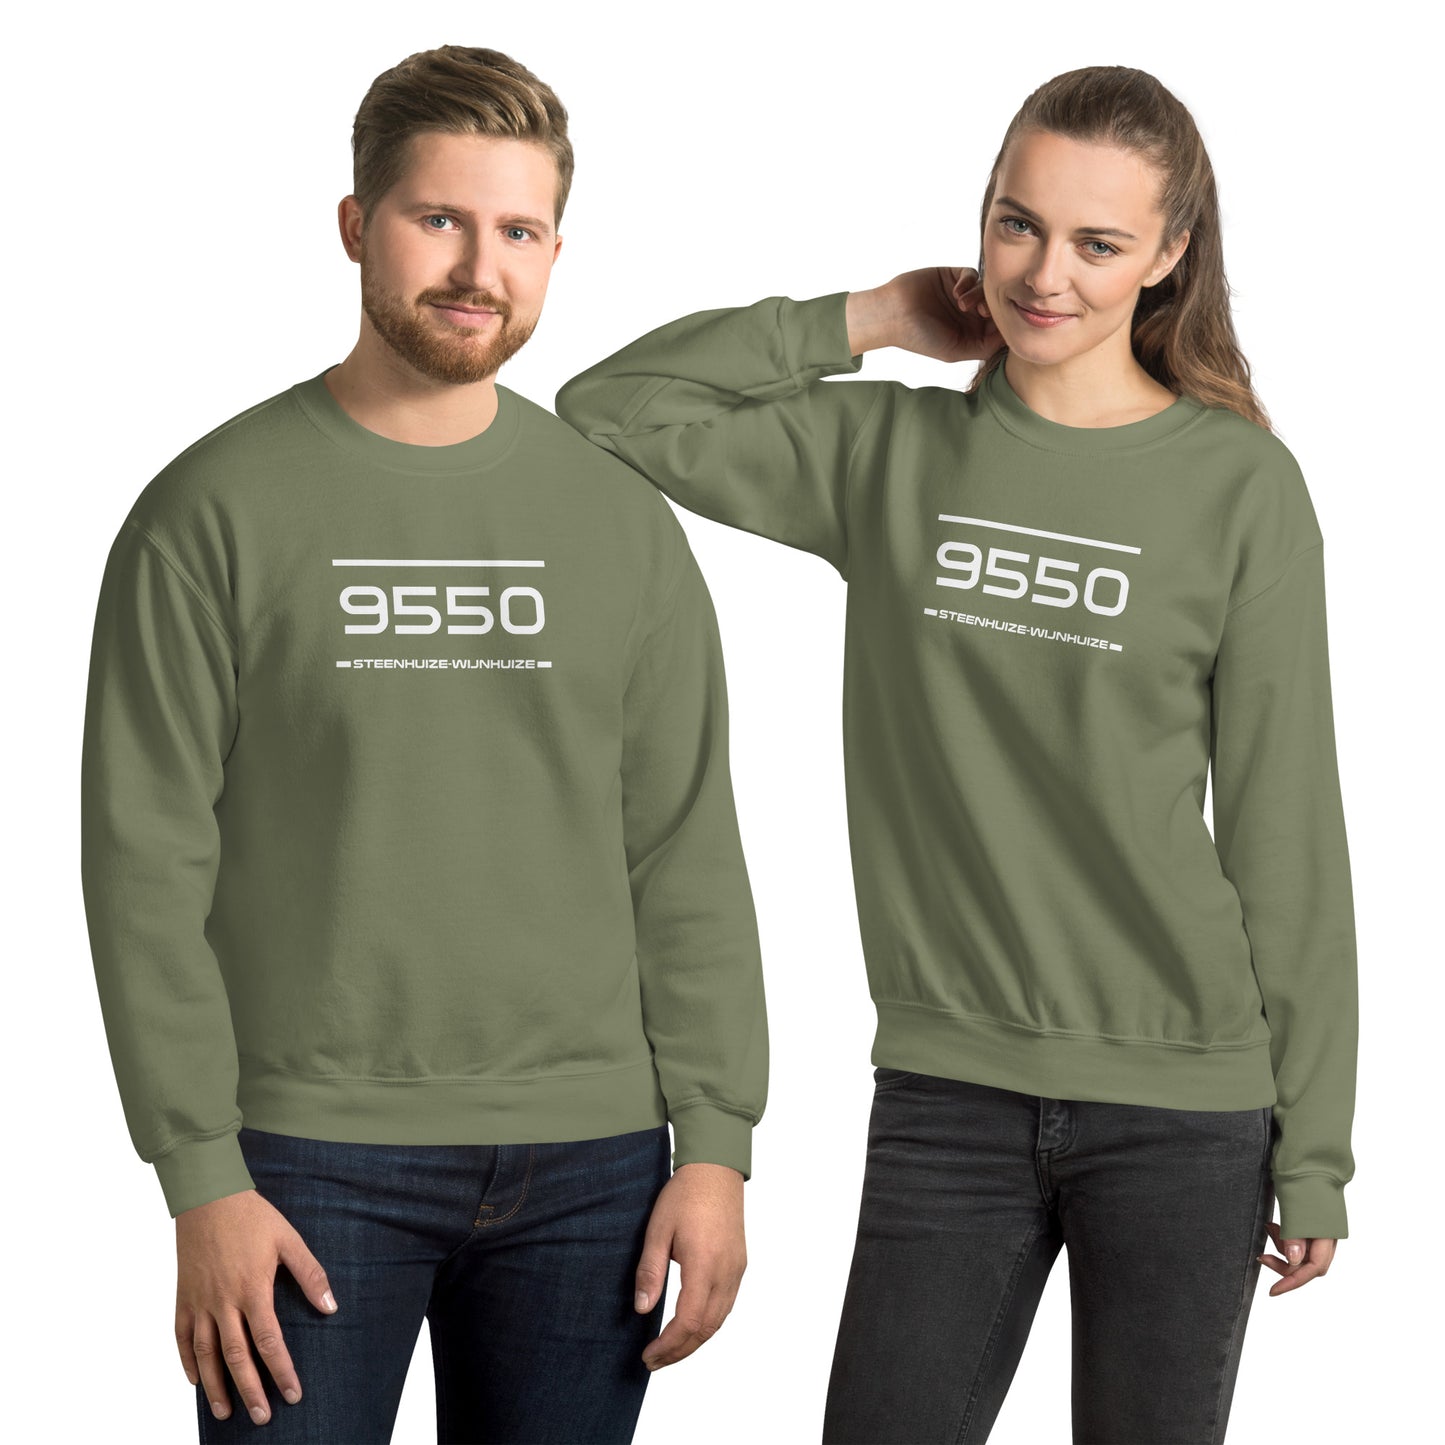 Sweater - 9550 - Steenhuize-Wijnhuize (M/V)